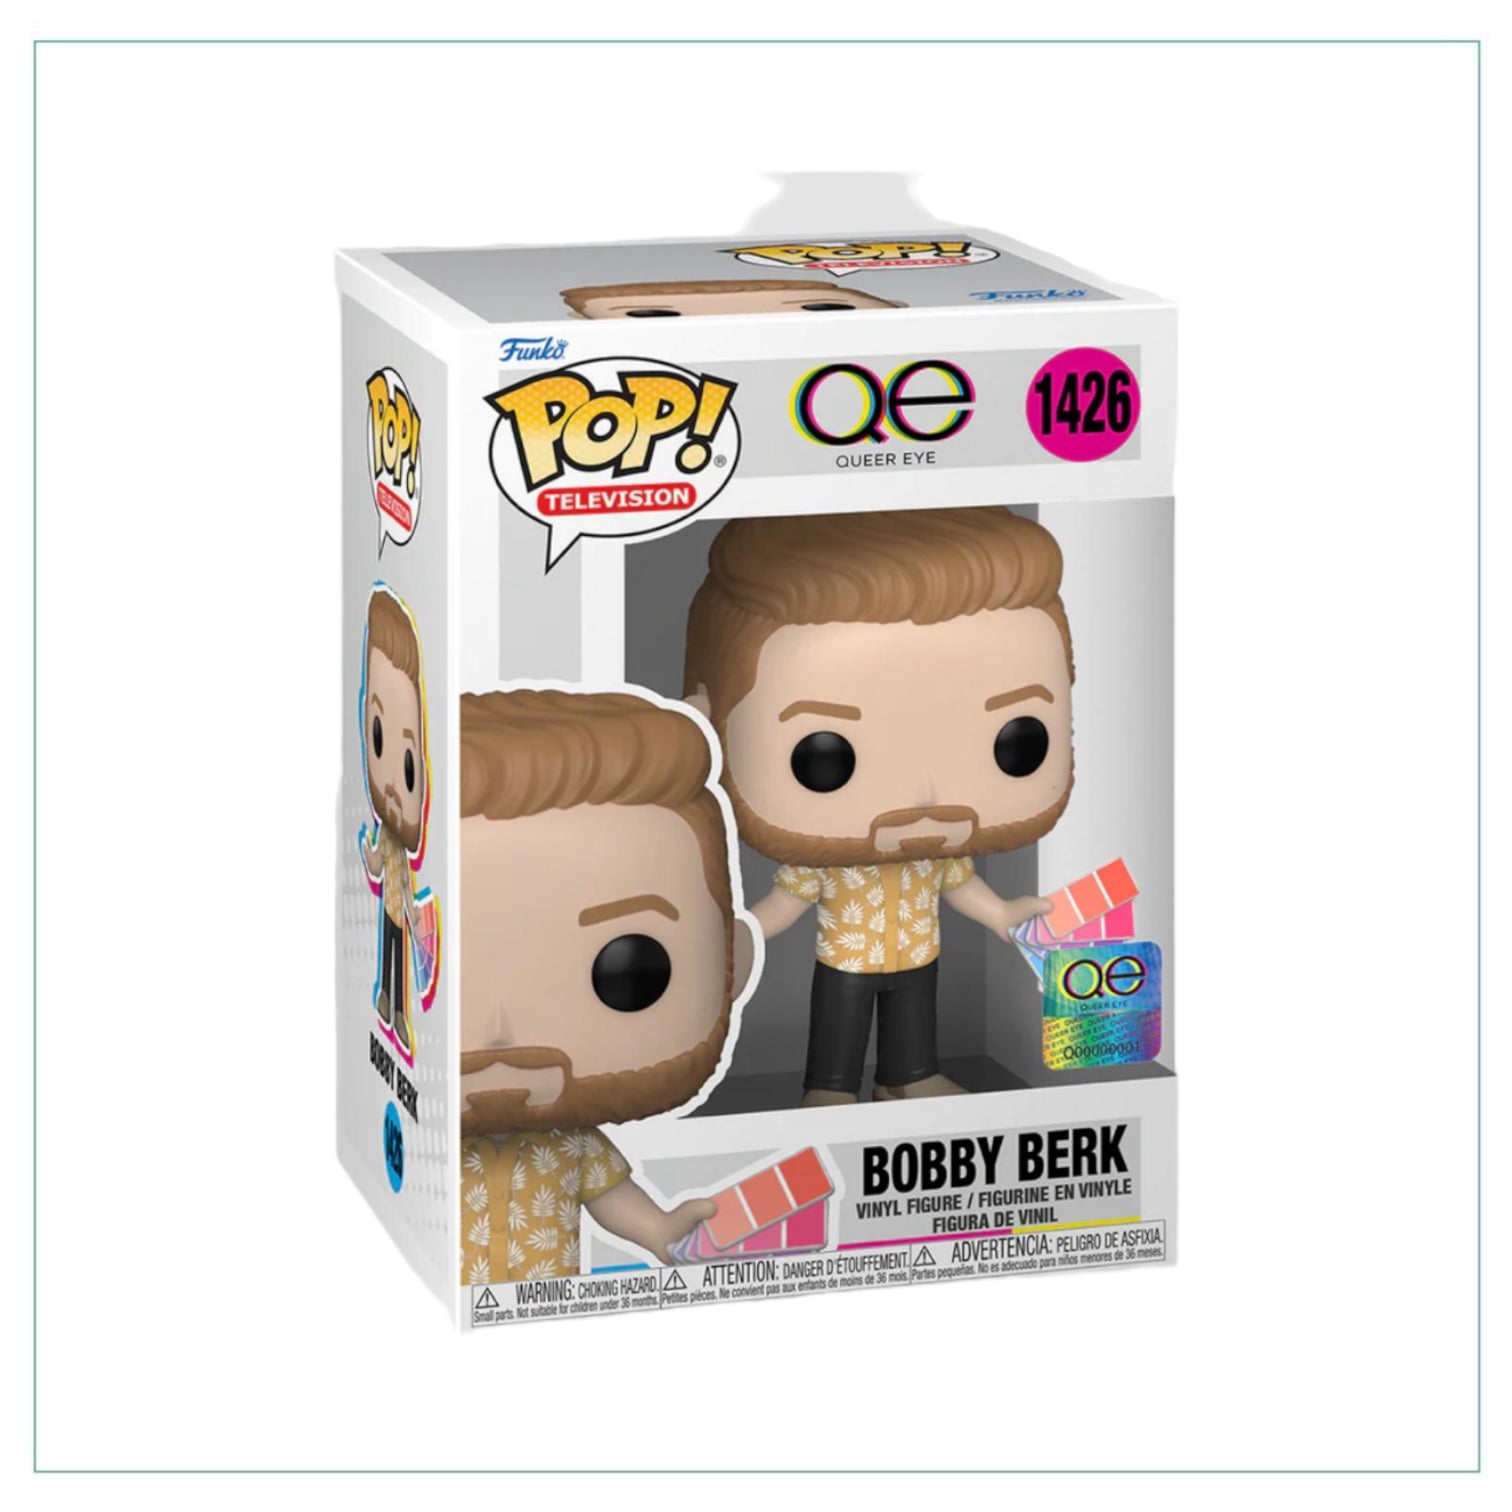 Bobby Berk #1426 Funko Pop! Queer Eye